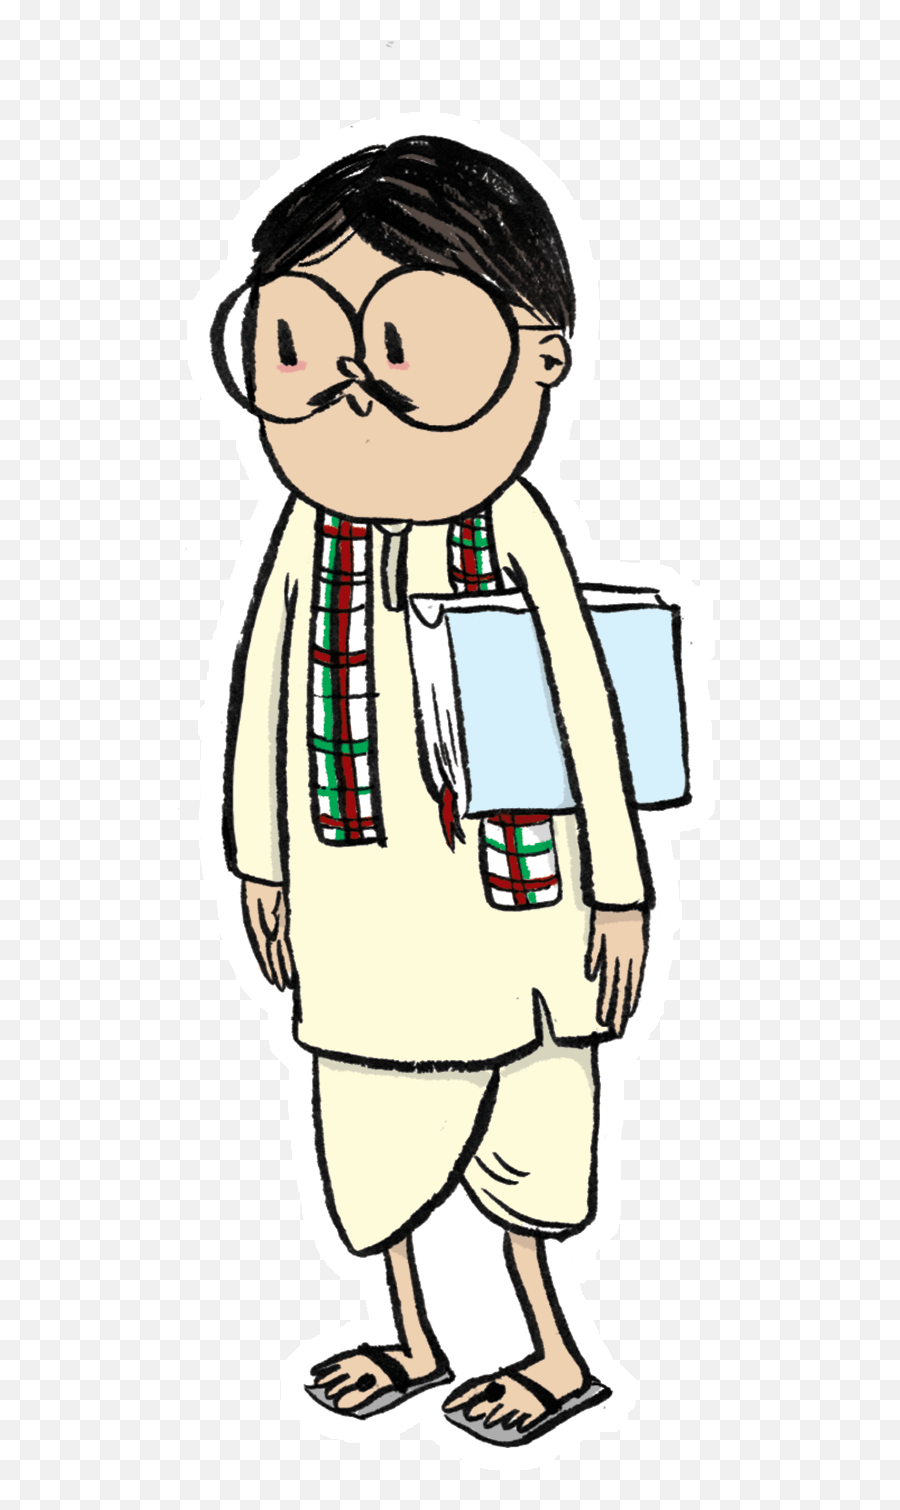 Indian Clipart Dad - Cartoon Bengali Man Emoji,Indian Clipart